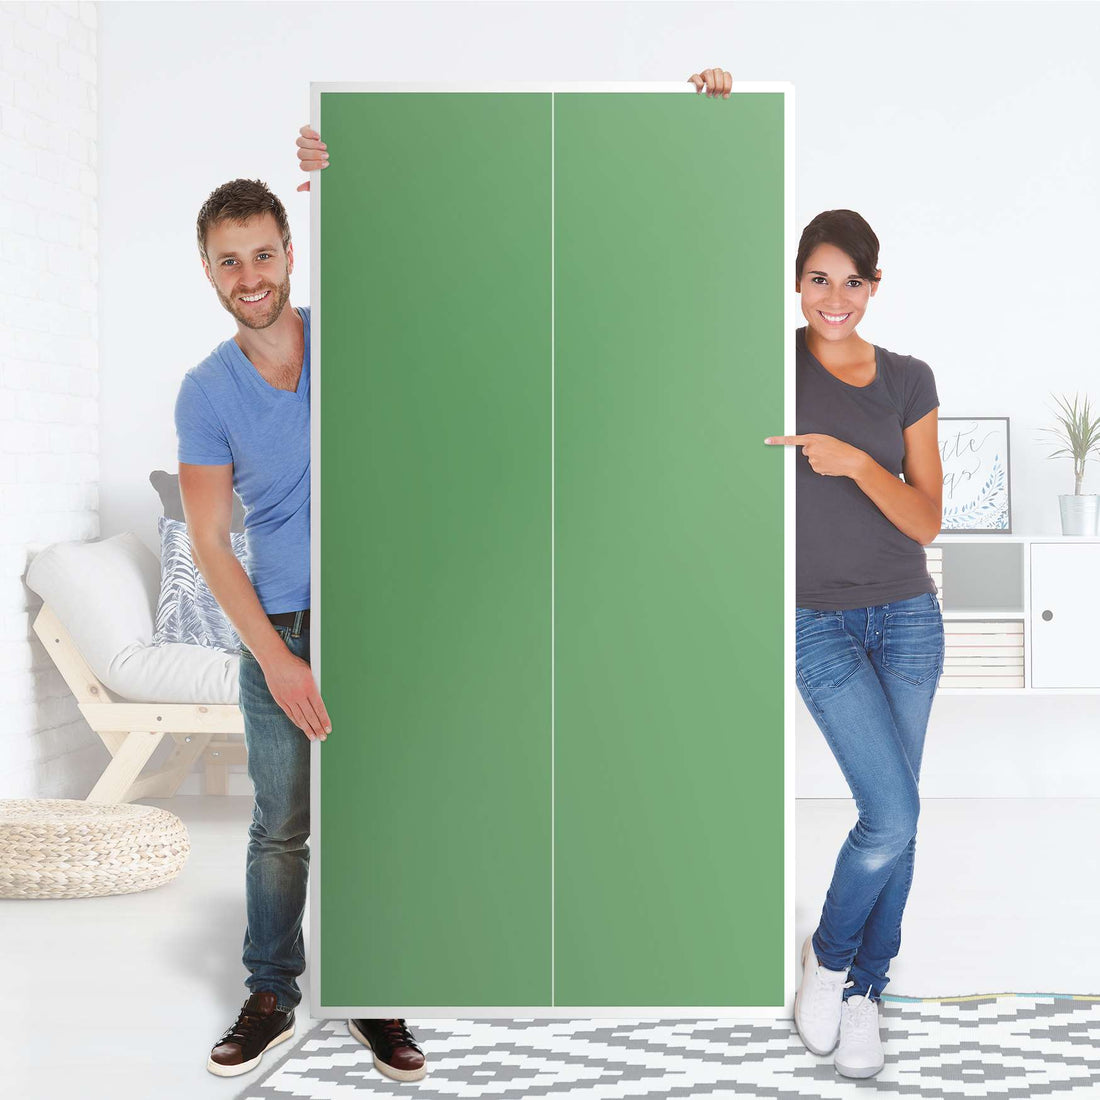 Klebefolie für Möbel Grün Light - IKEA Pax Schrank 201 cm Höhe - 2 Türen - Folie